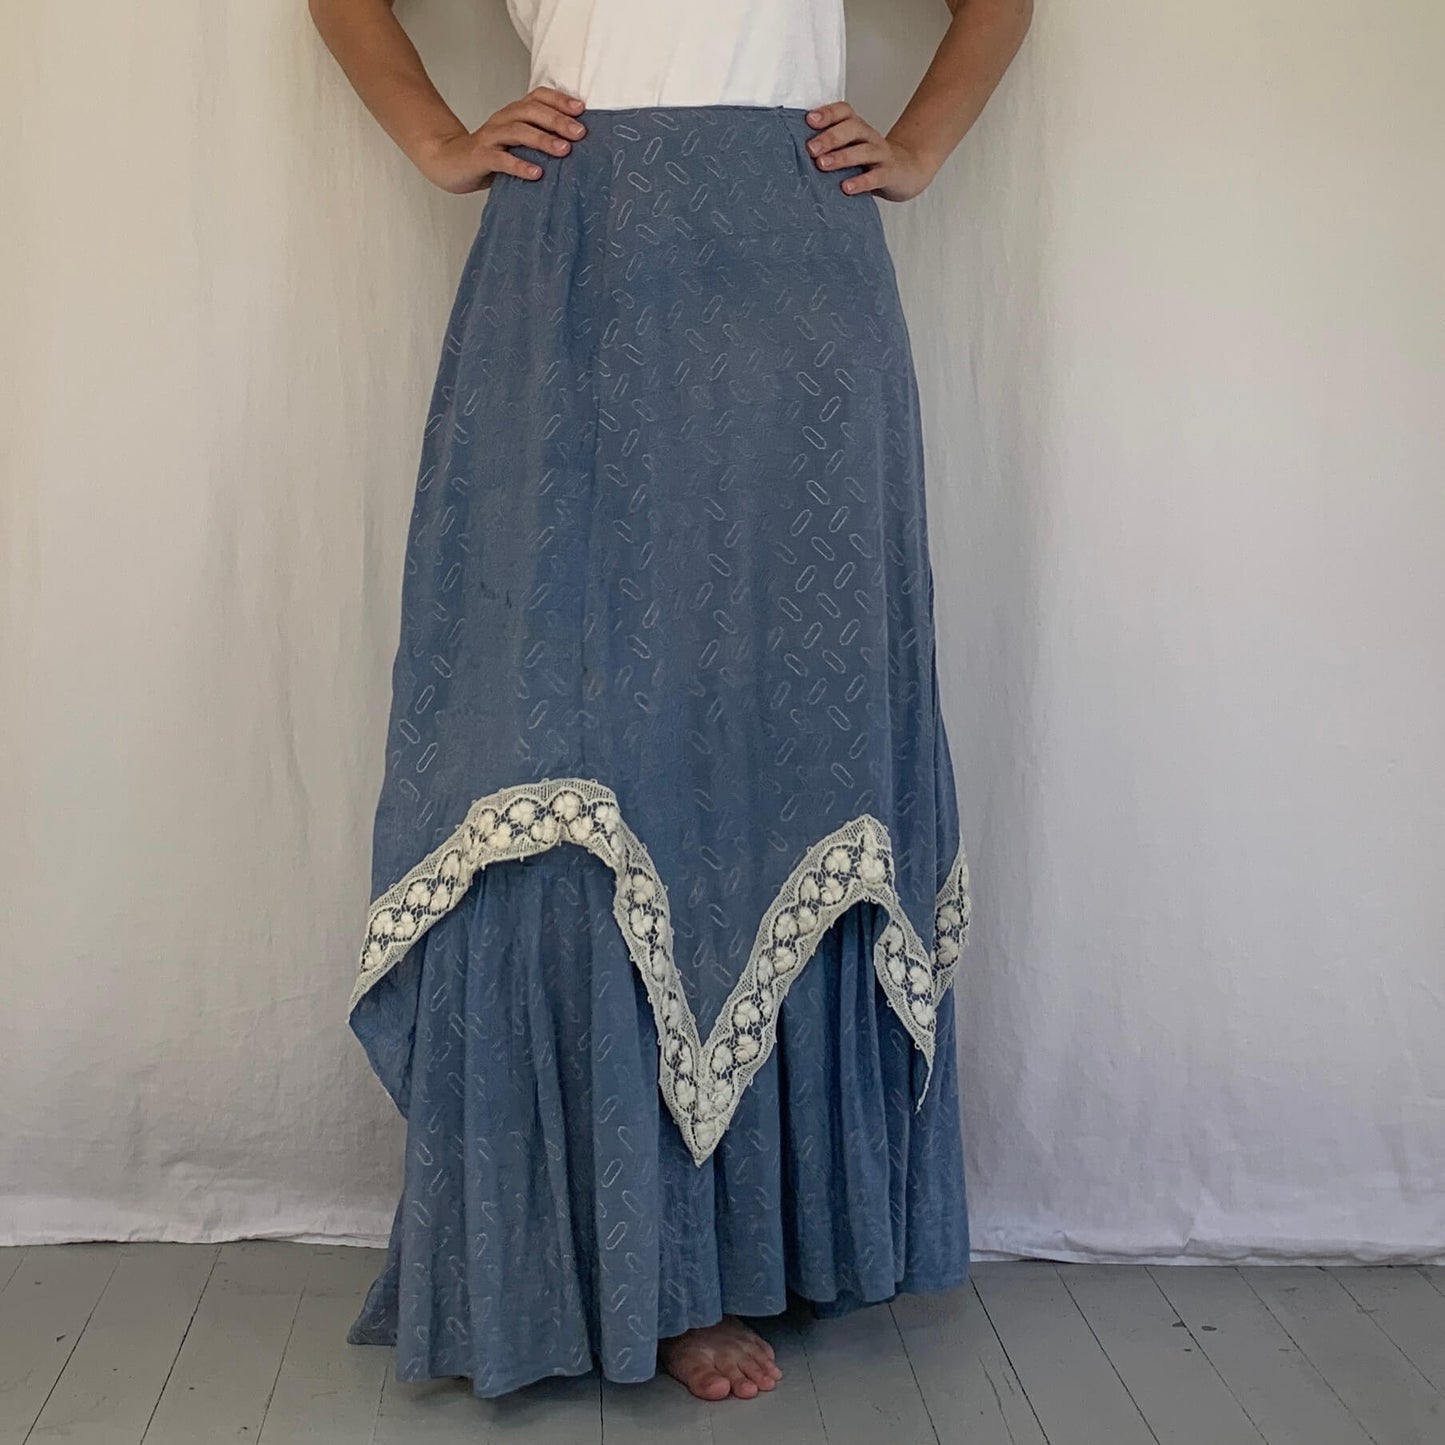 1900s skirt on model in blue